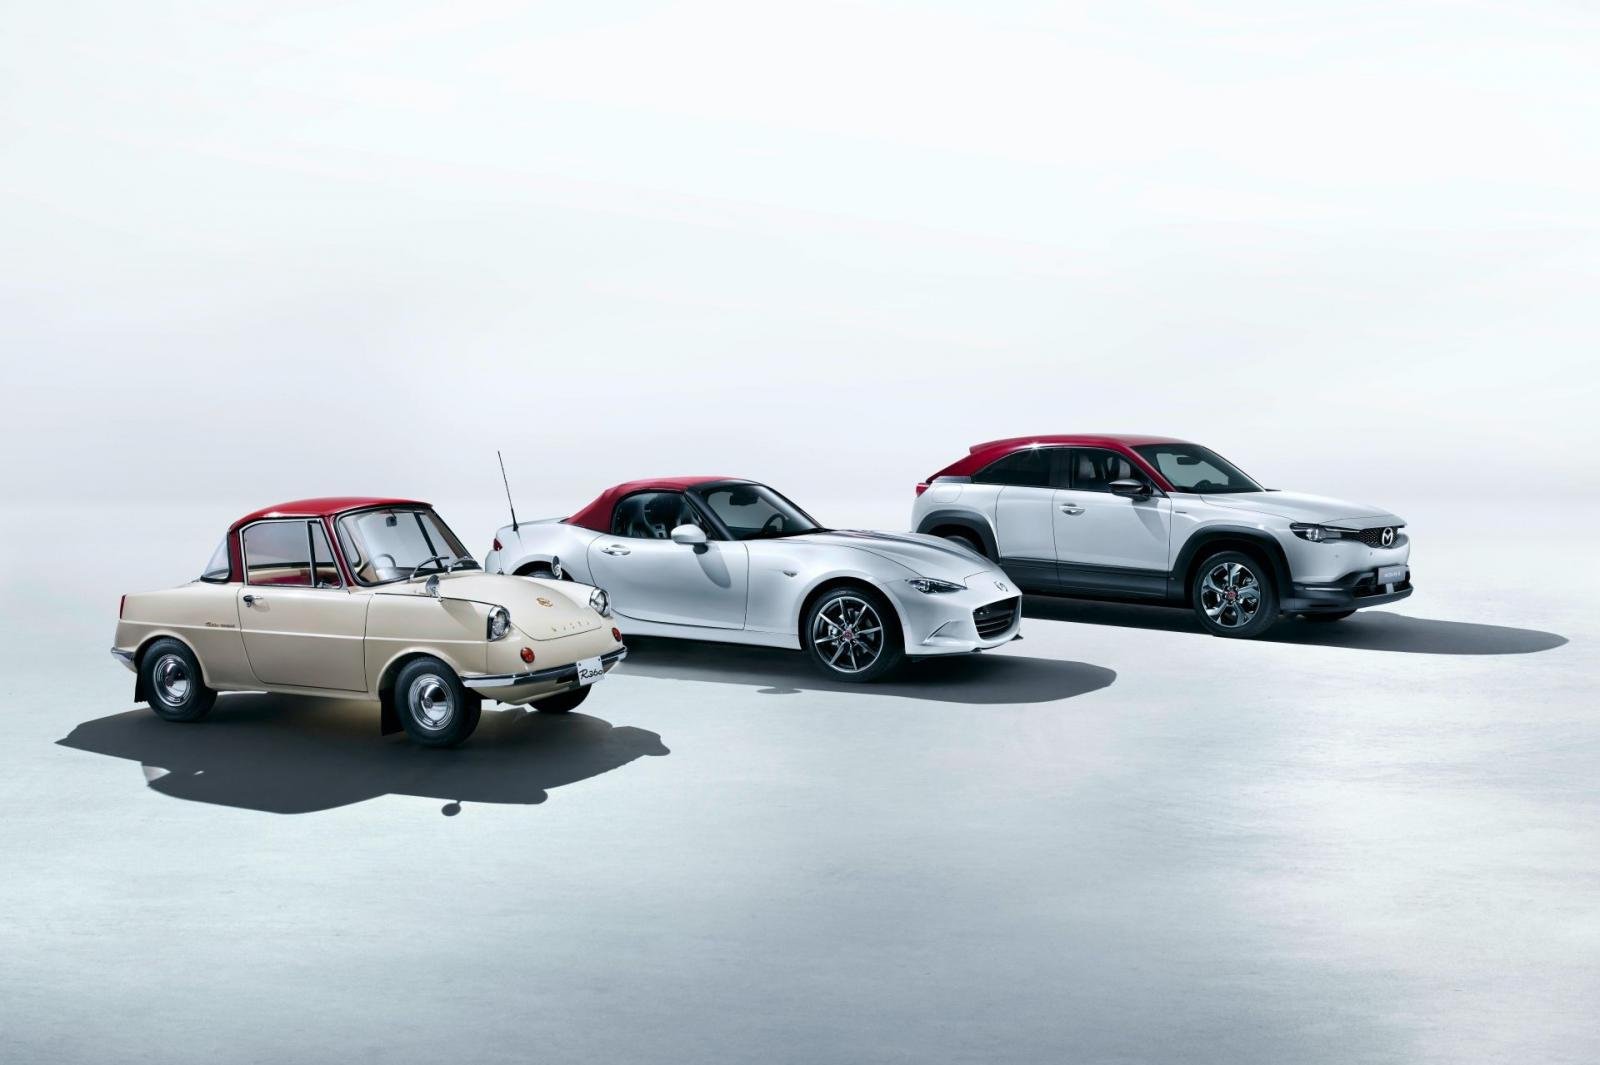 Triển lãm Geneva bị hủy vì COVID-19, Mazda trình làng bộ sưu tập kỷ niệm 100 năm tại quê nhà